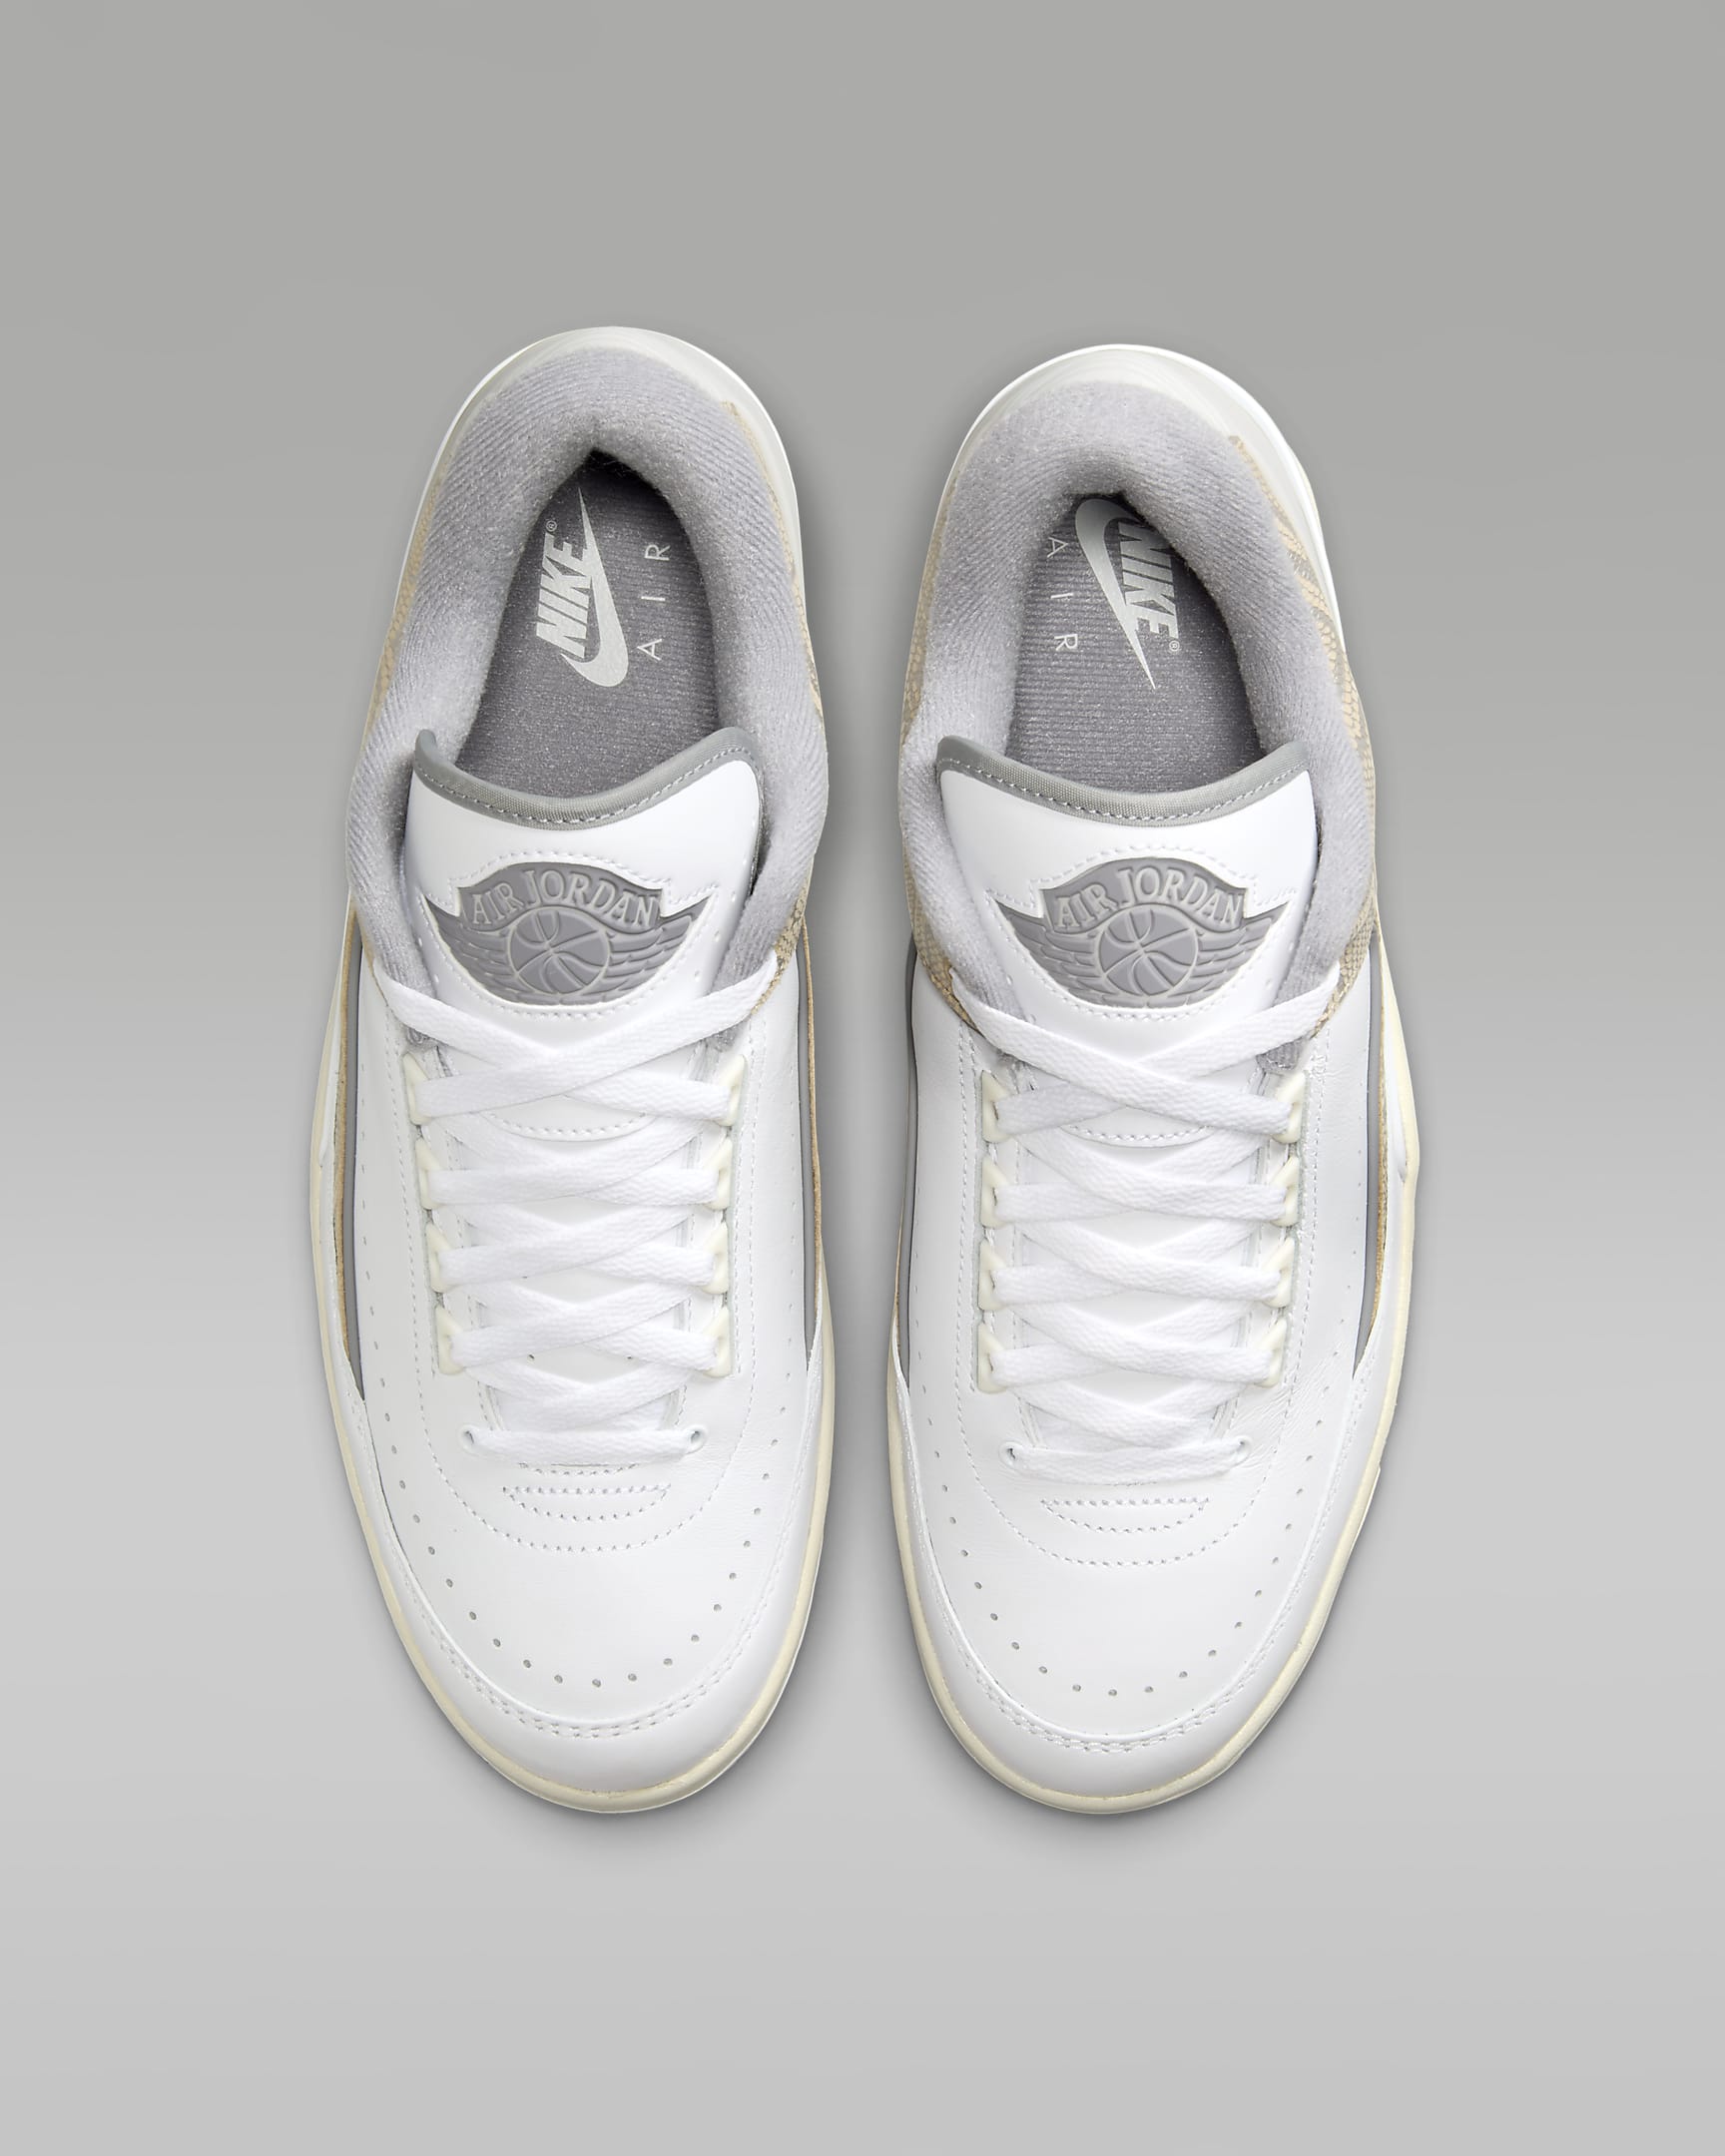 Nike Air Jordan 2 Retro Low Men’s Shoe Review: Is This the Ultimate Retro?